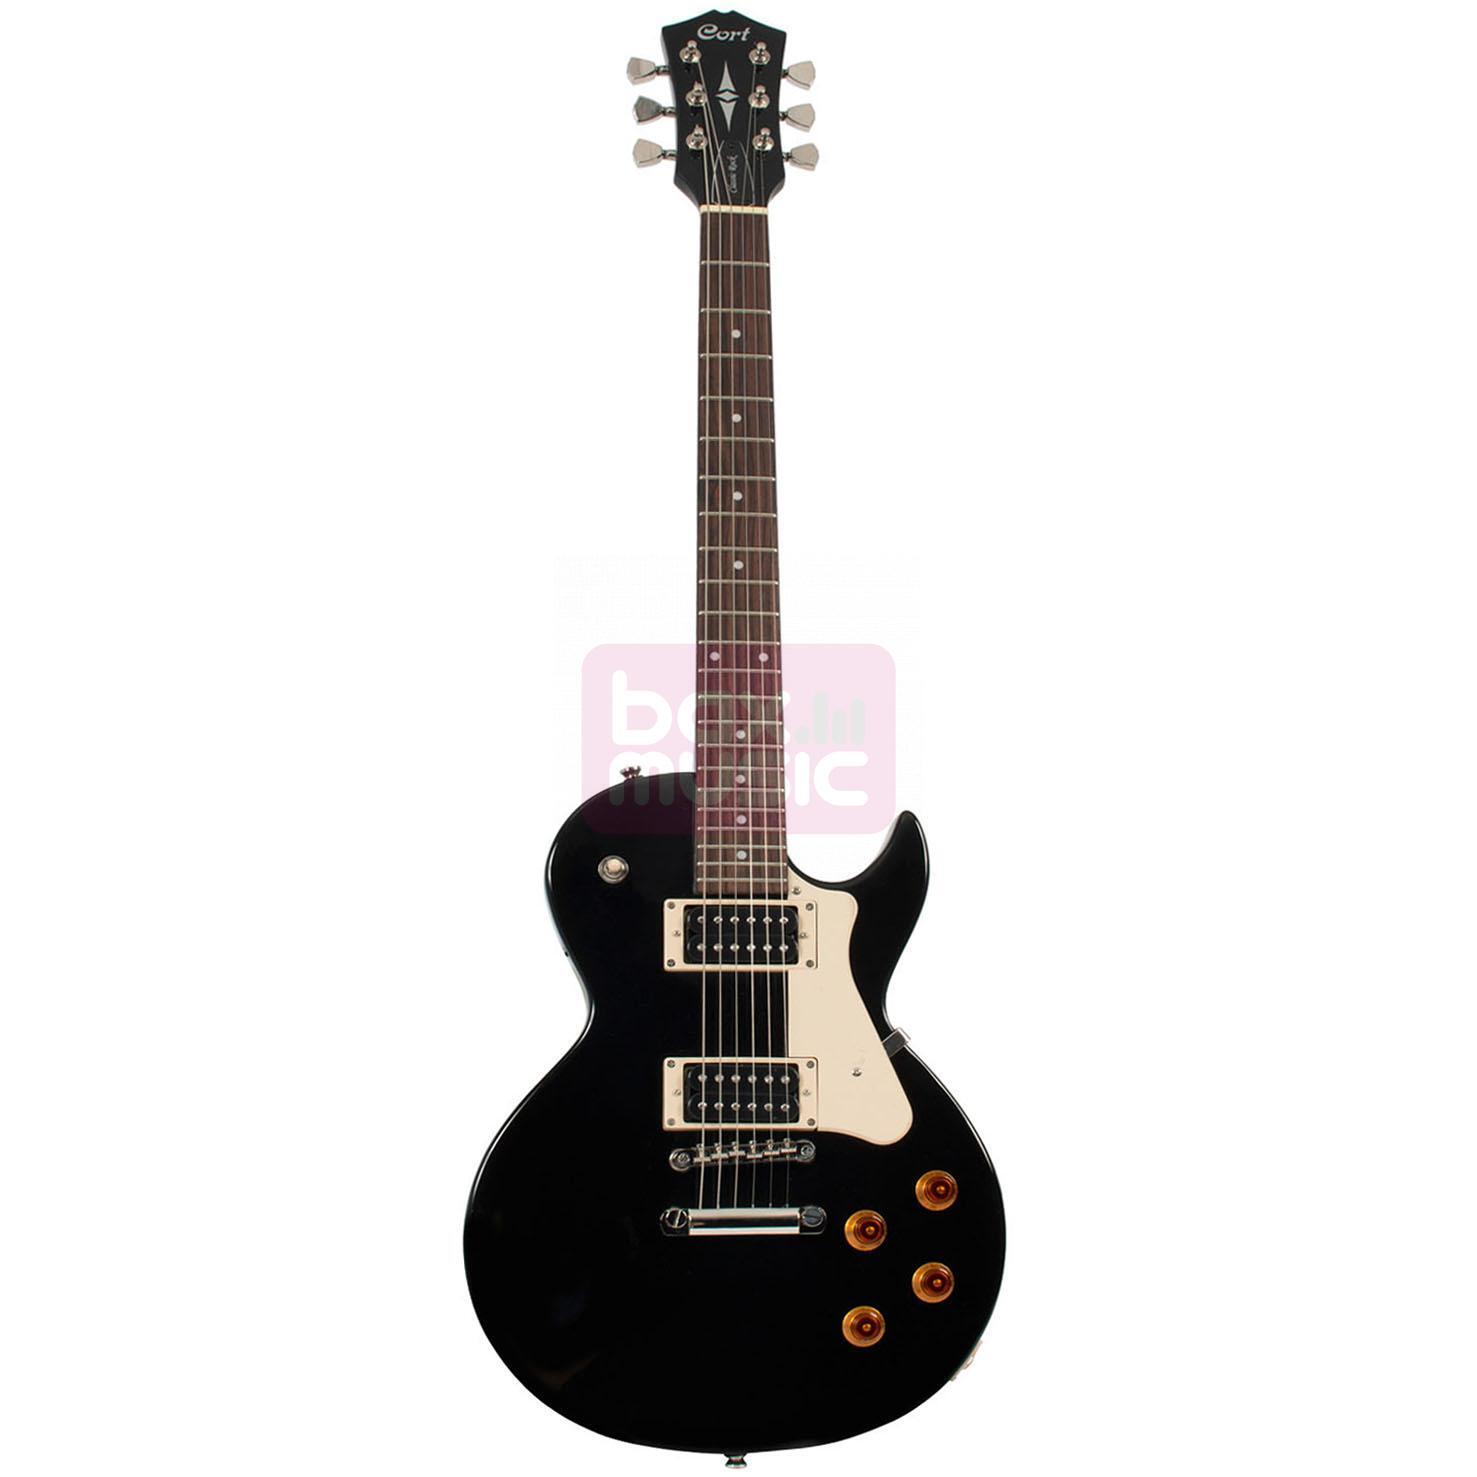 Cort Classic Rock CR 100 elektrische gitaar zwart